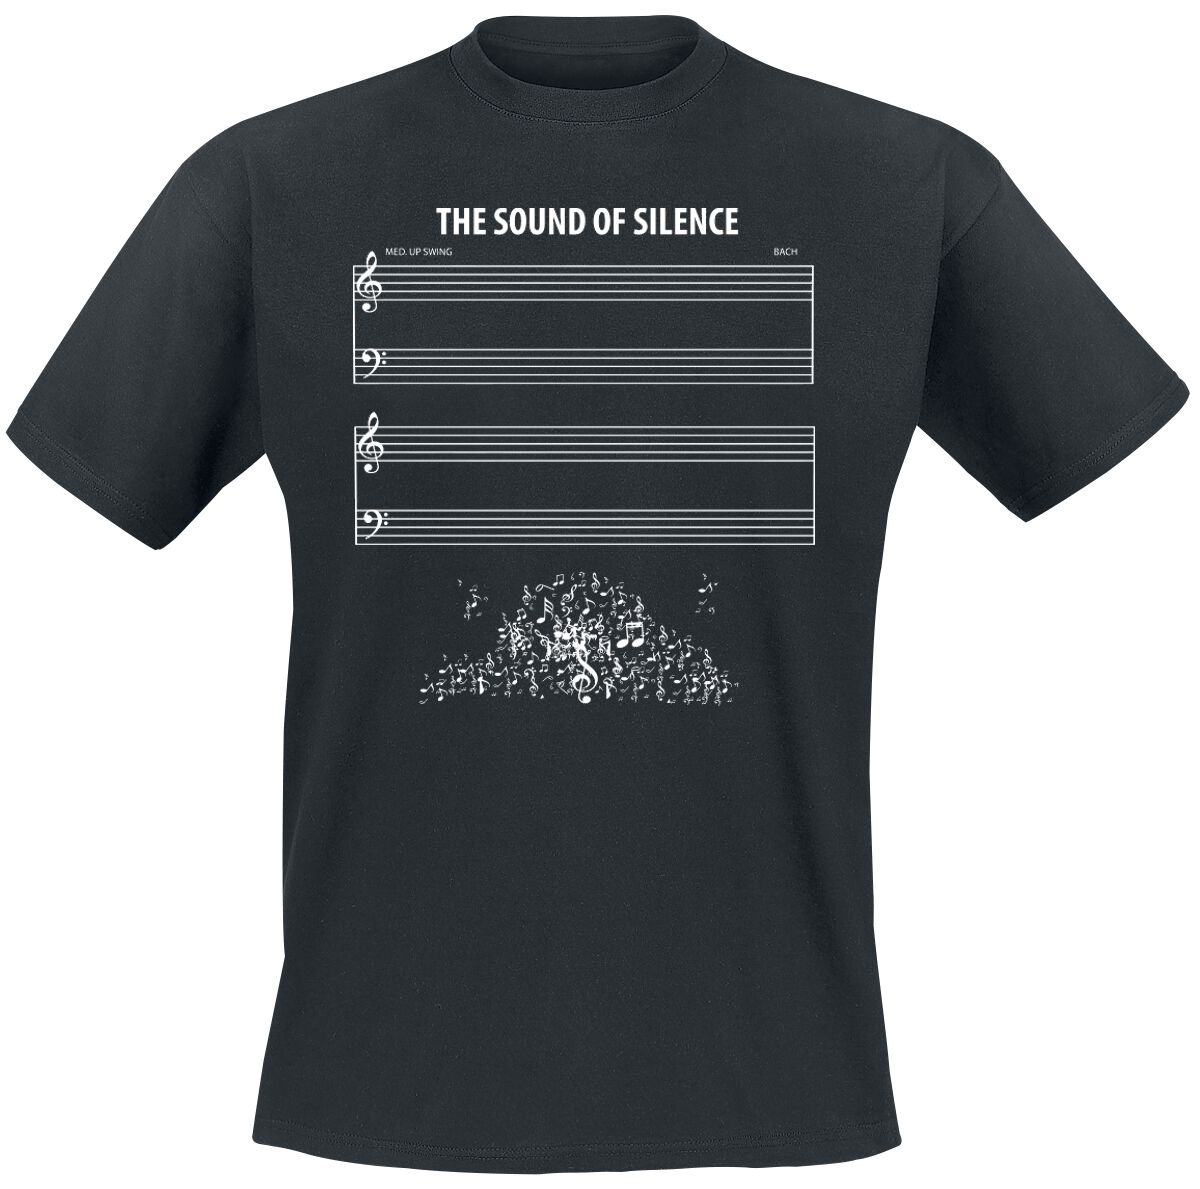 Sprüche T-Shirt - The Sound Of Silence - 3XL bis 4XL - für Männer - Größe 4XL - schwarz